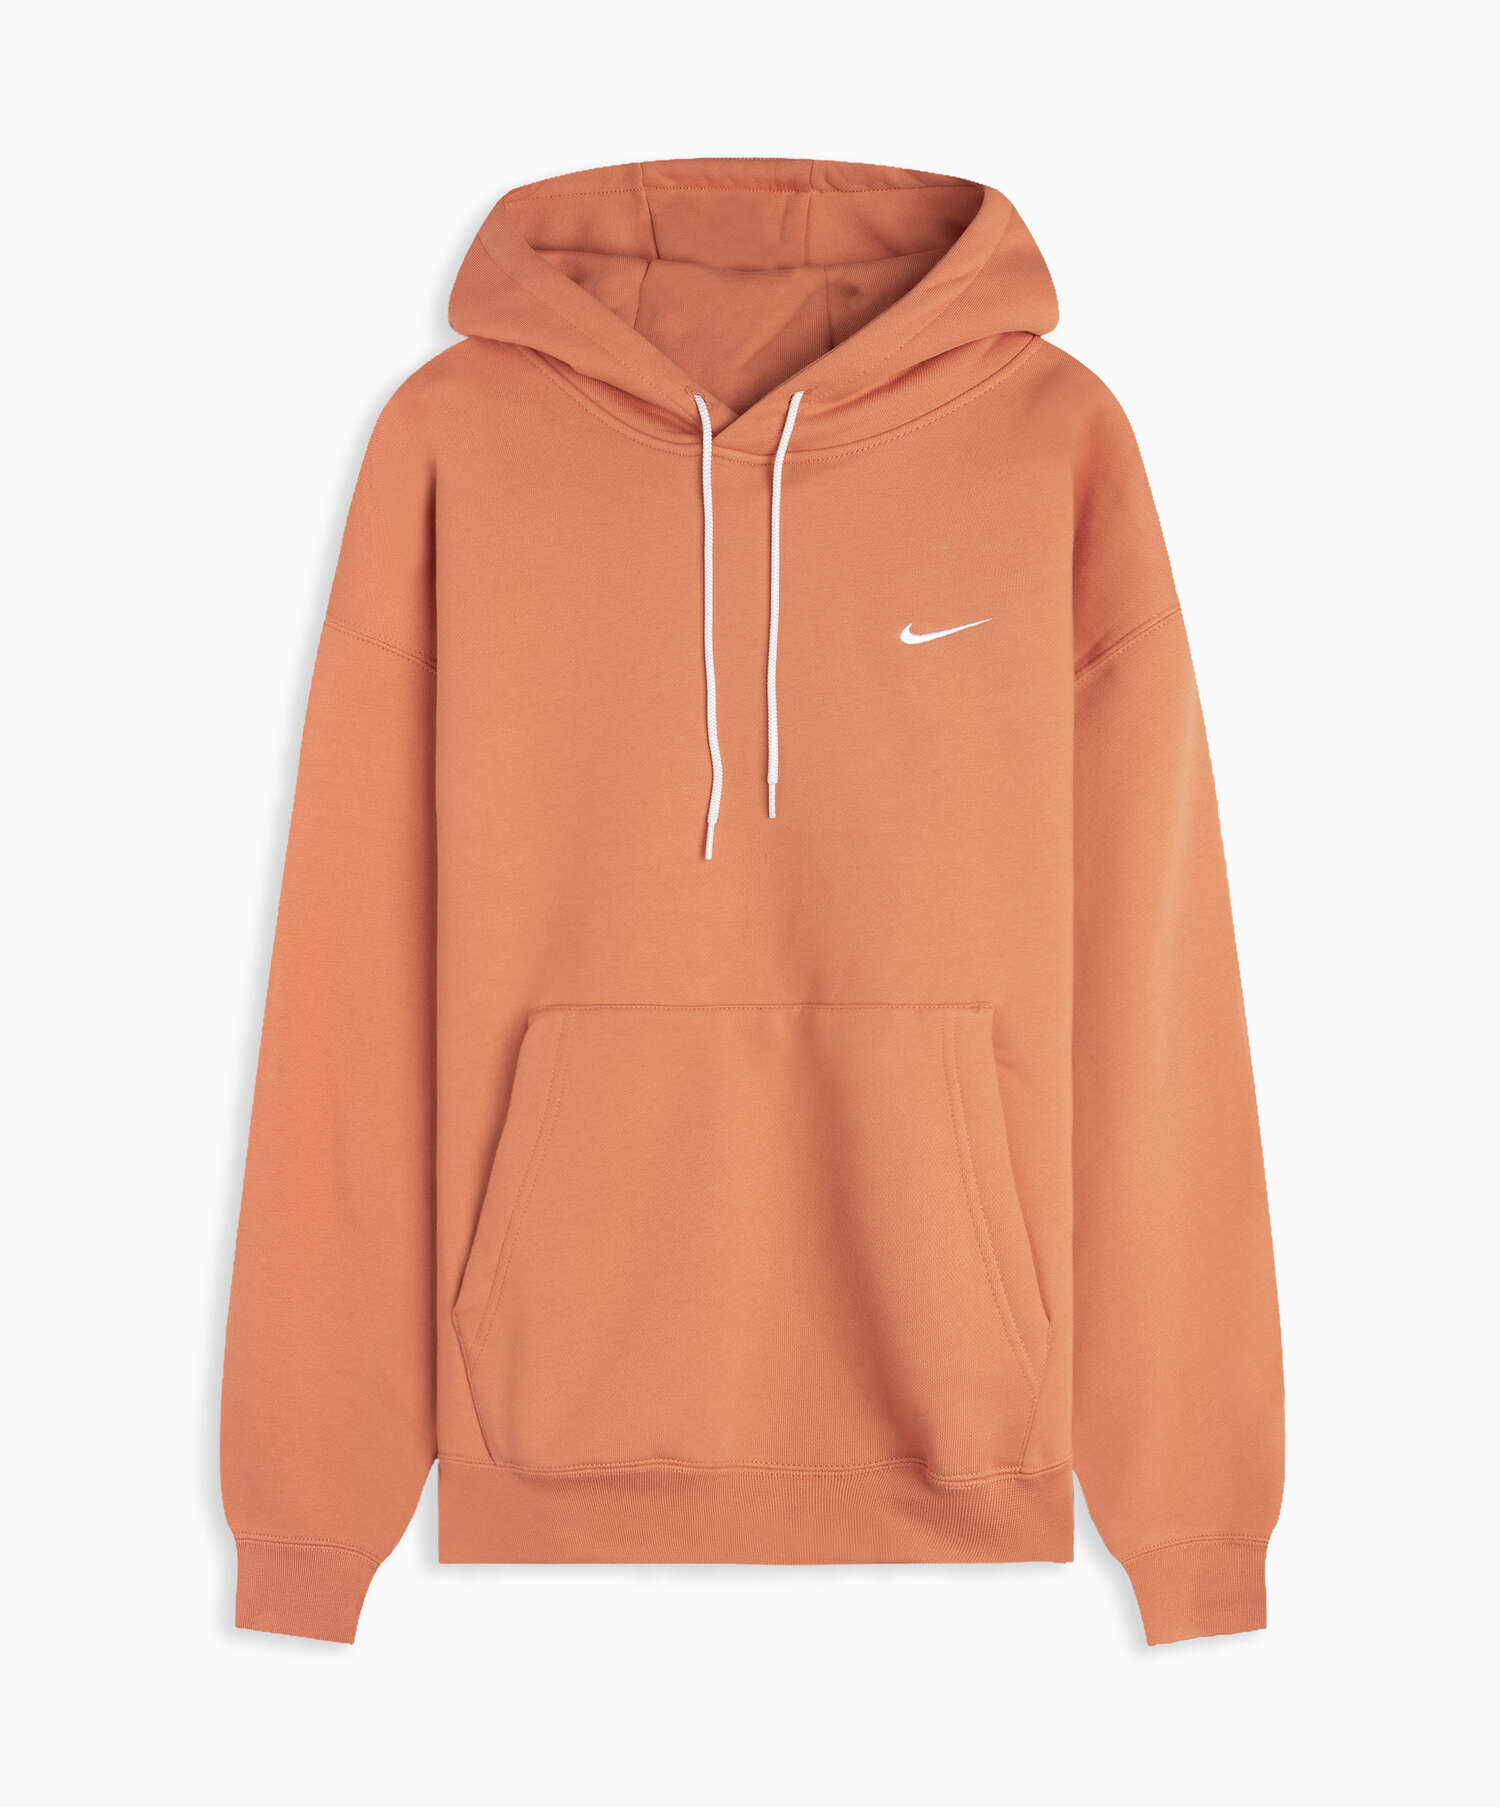 NikeLab NRG Fleece Men's Hoodie Orange |CV0552-863| Buy Online at 